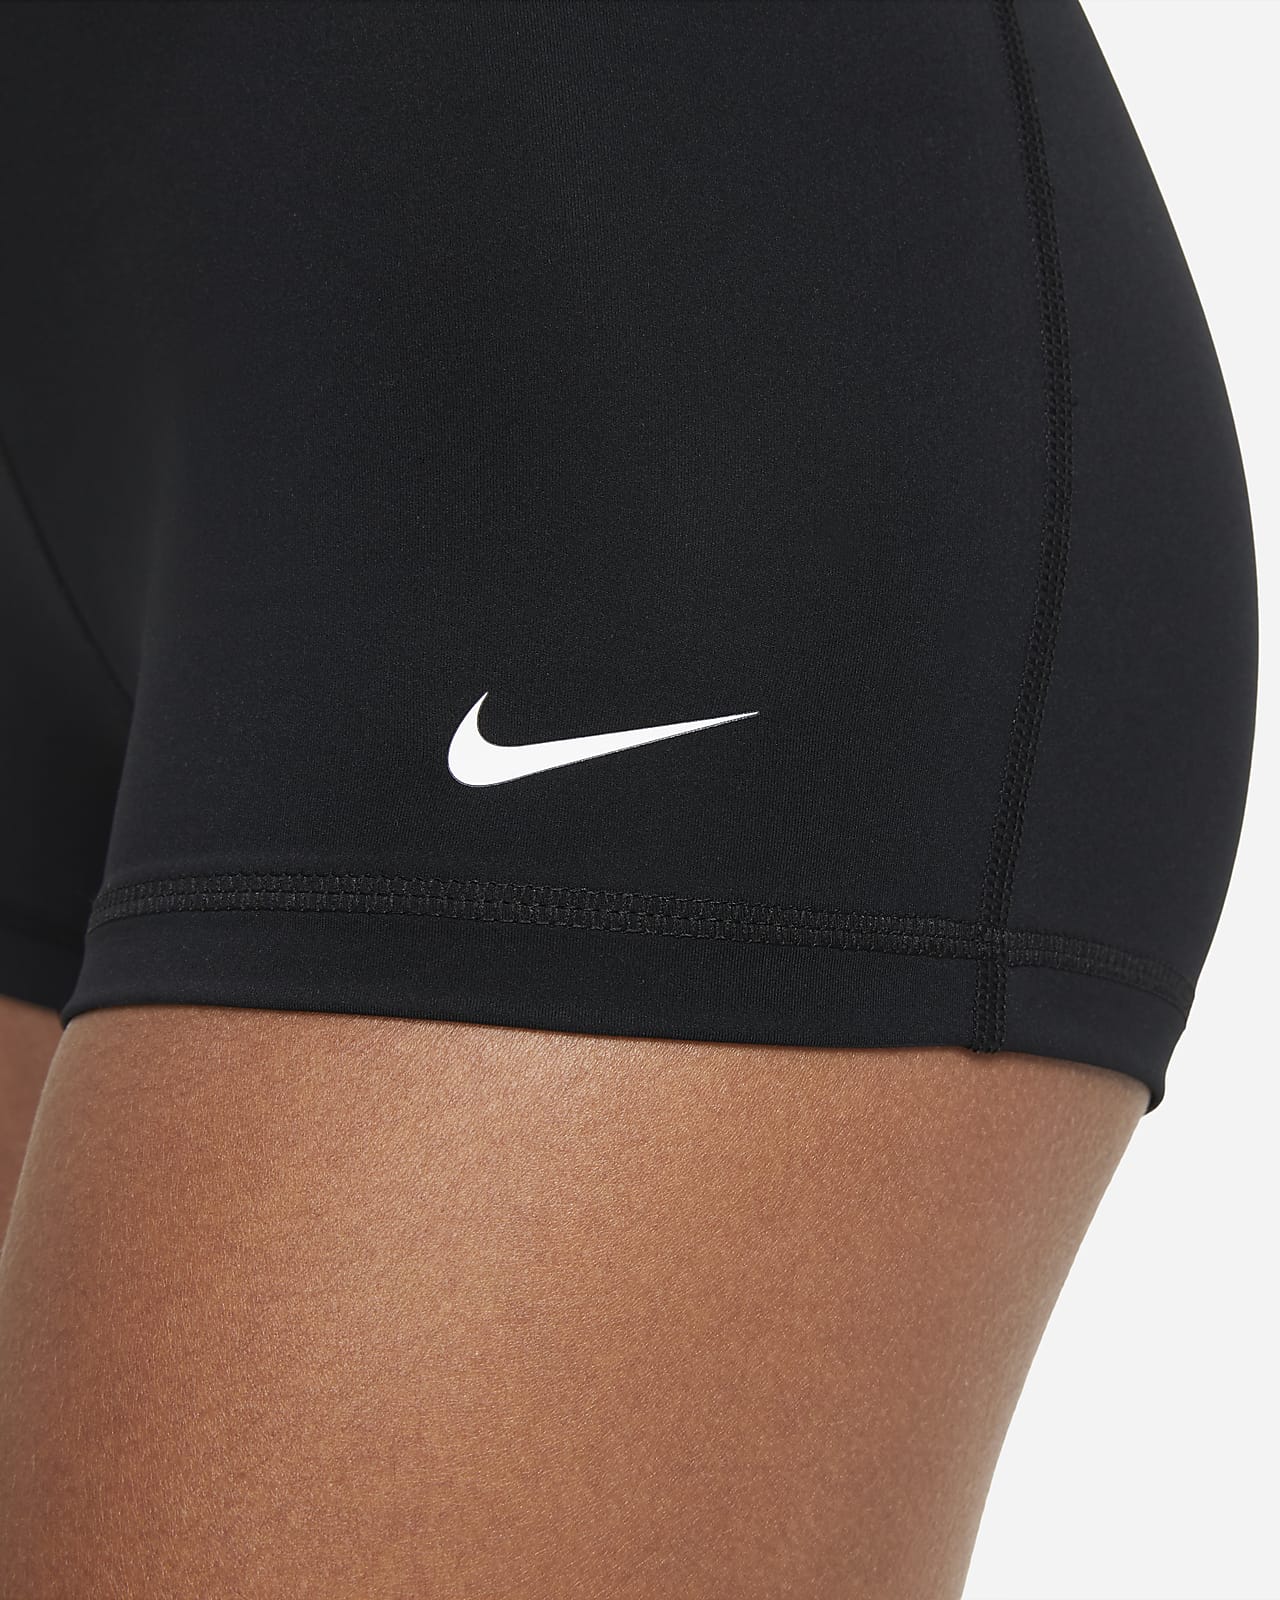 Nike Pro Women's 8cm (approx.) Shorts. Nike RO